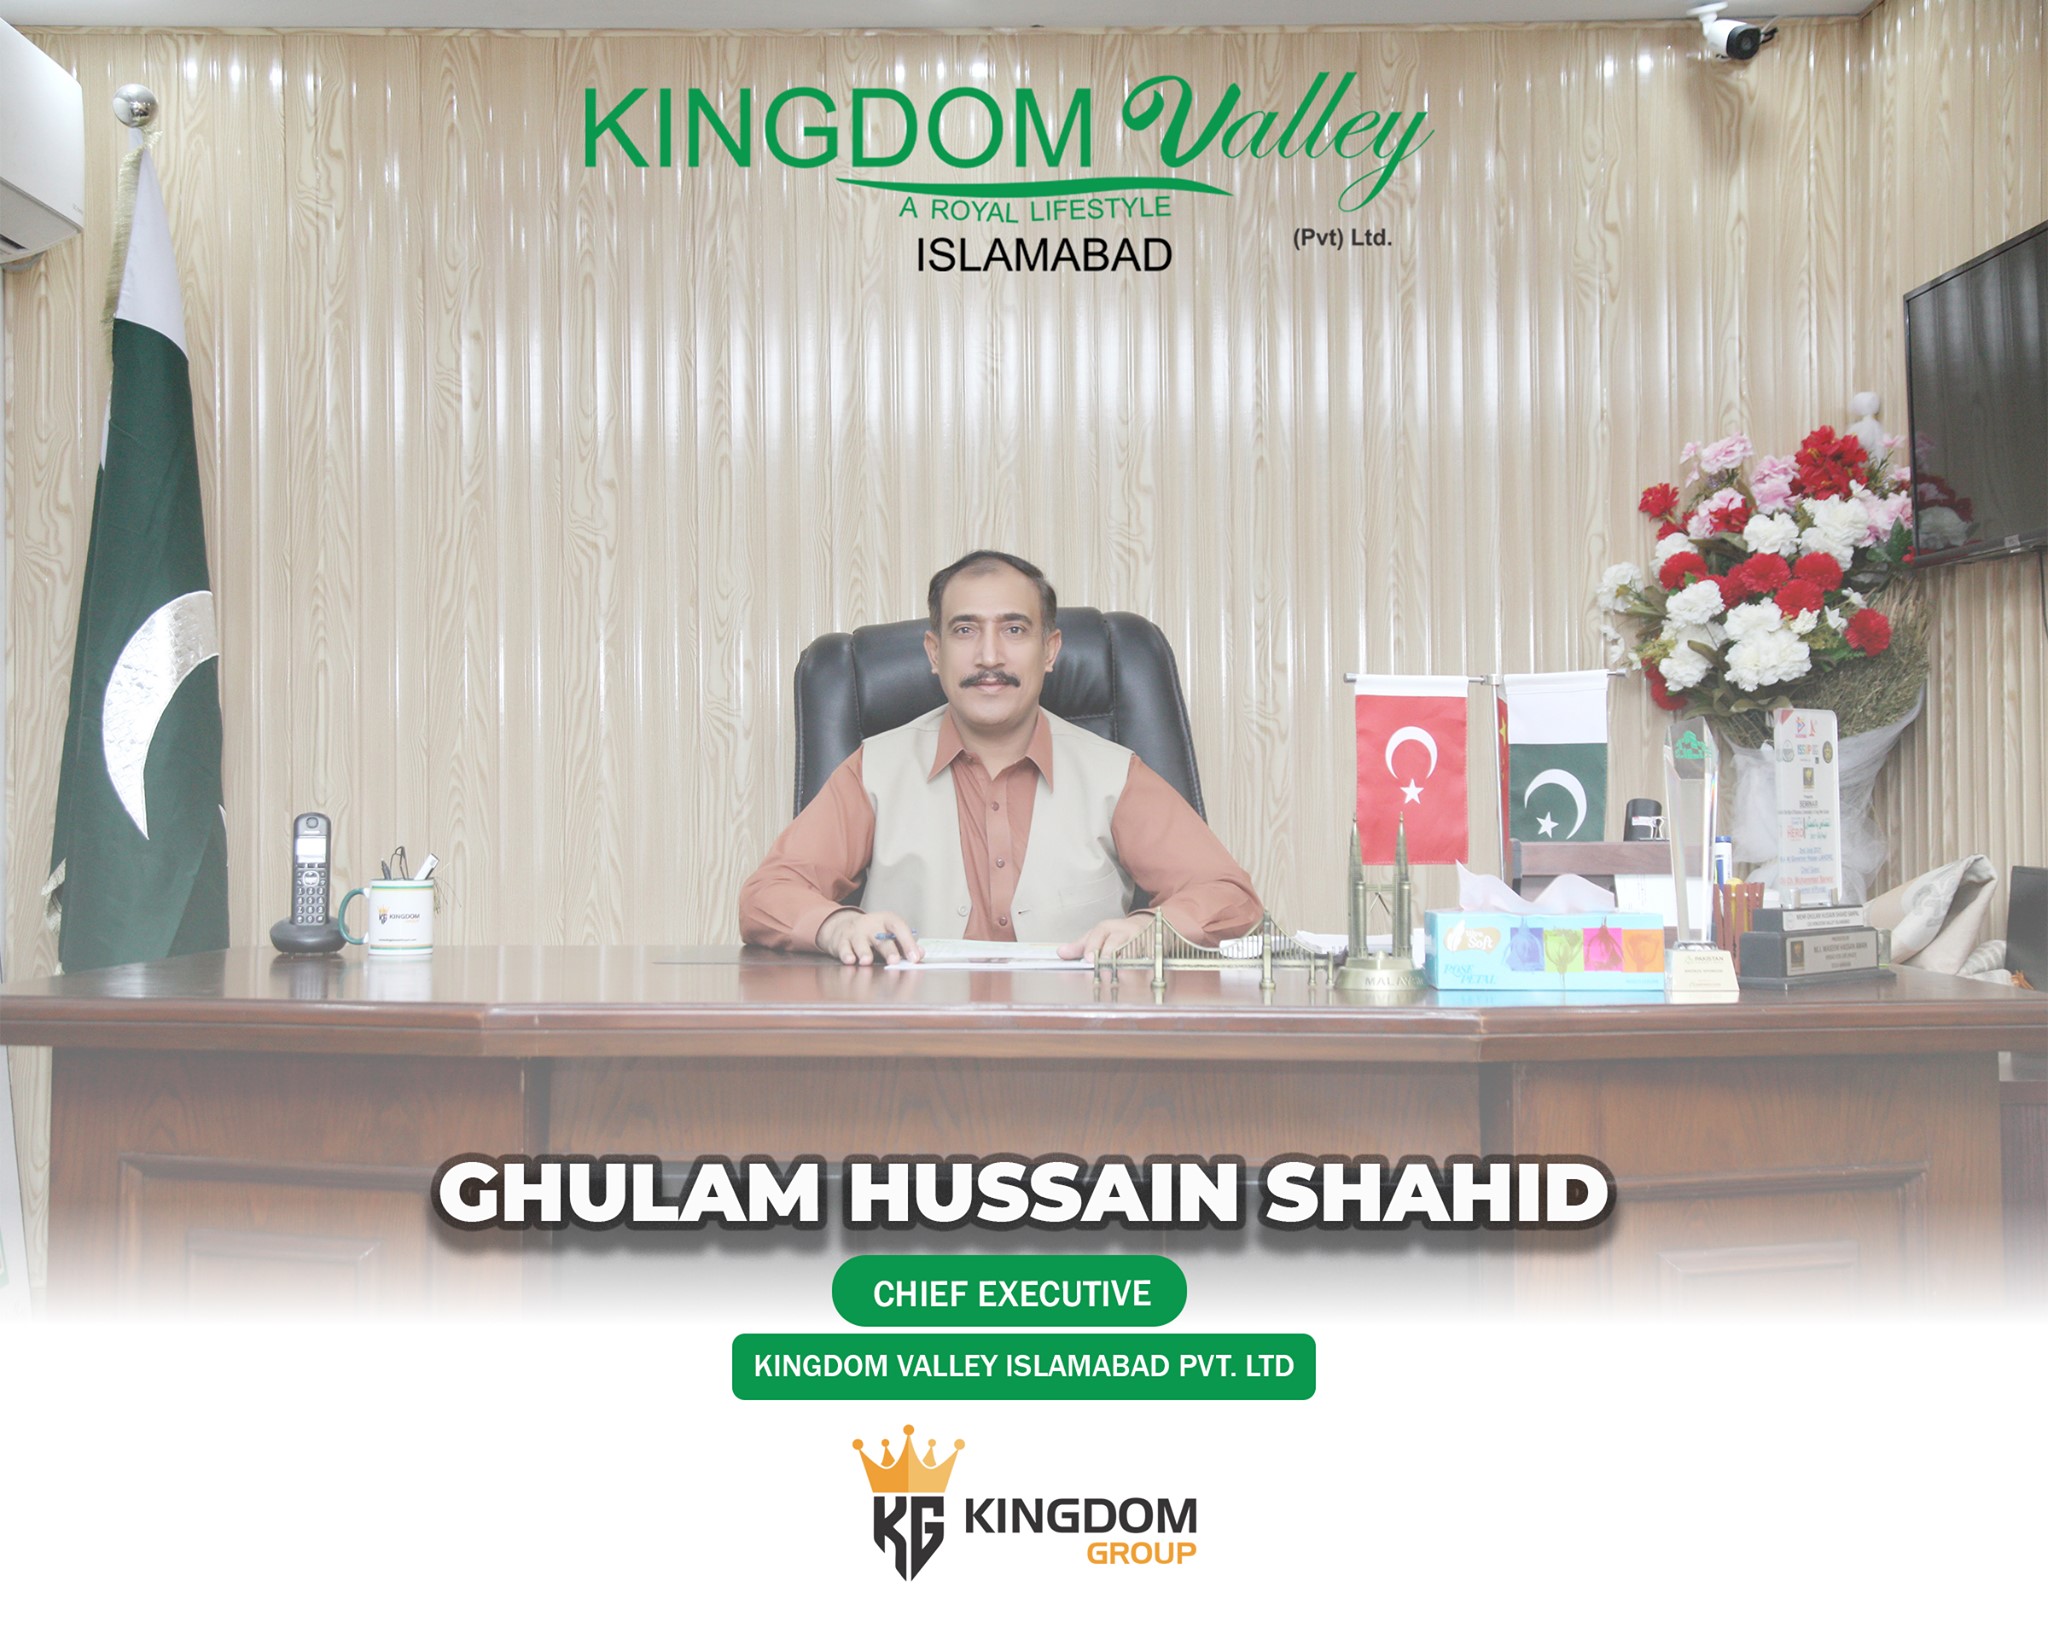 Kingdom valley Islamabad CEO